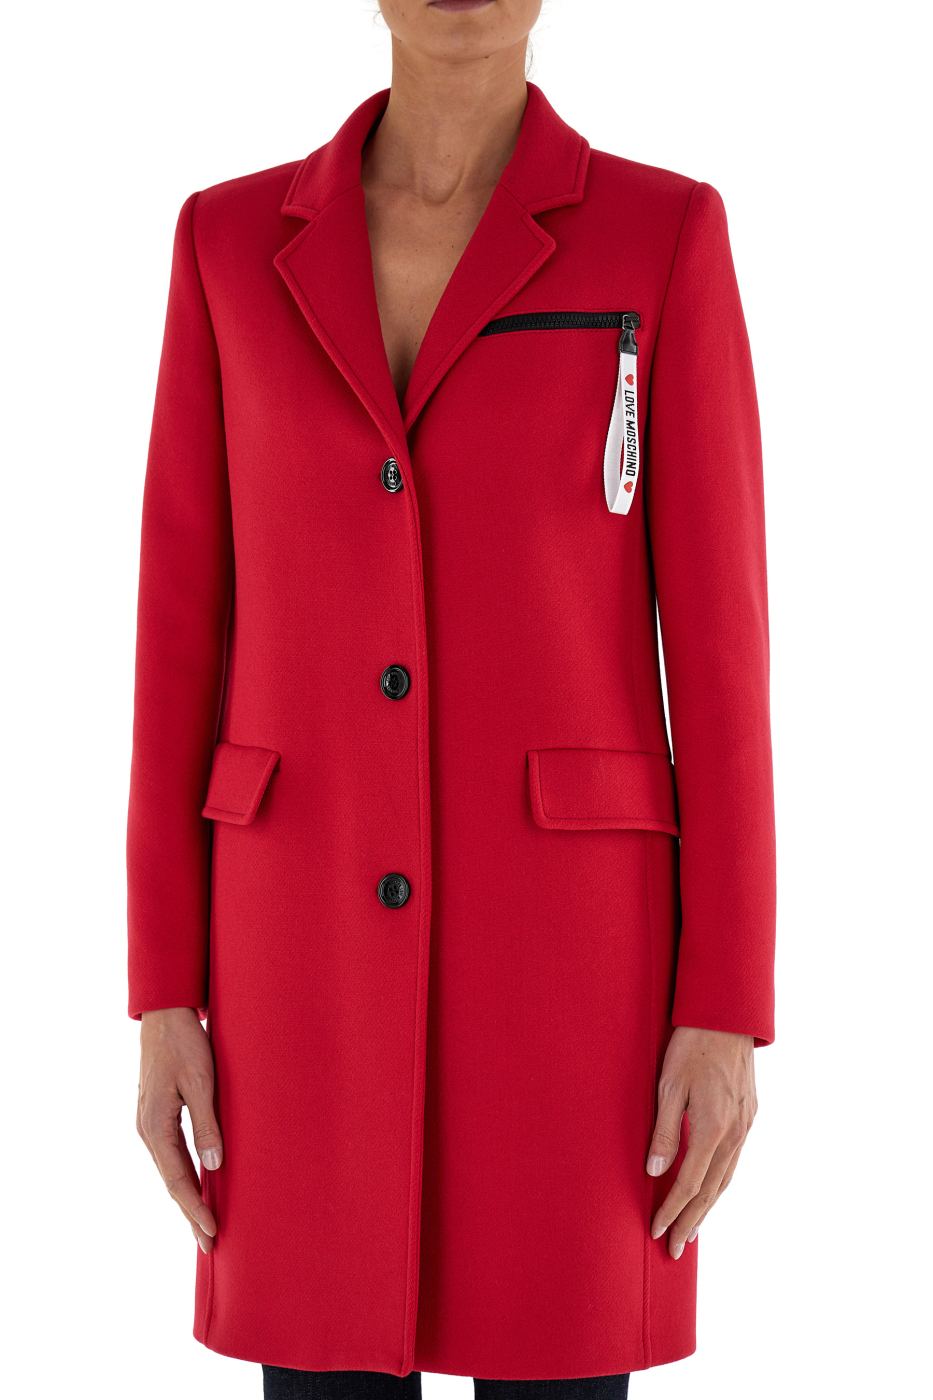 LOVE MOSCHINO abrigo colol rojo con bolsillo de cremallera en logo